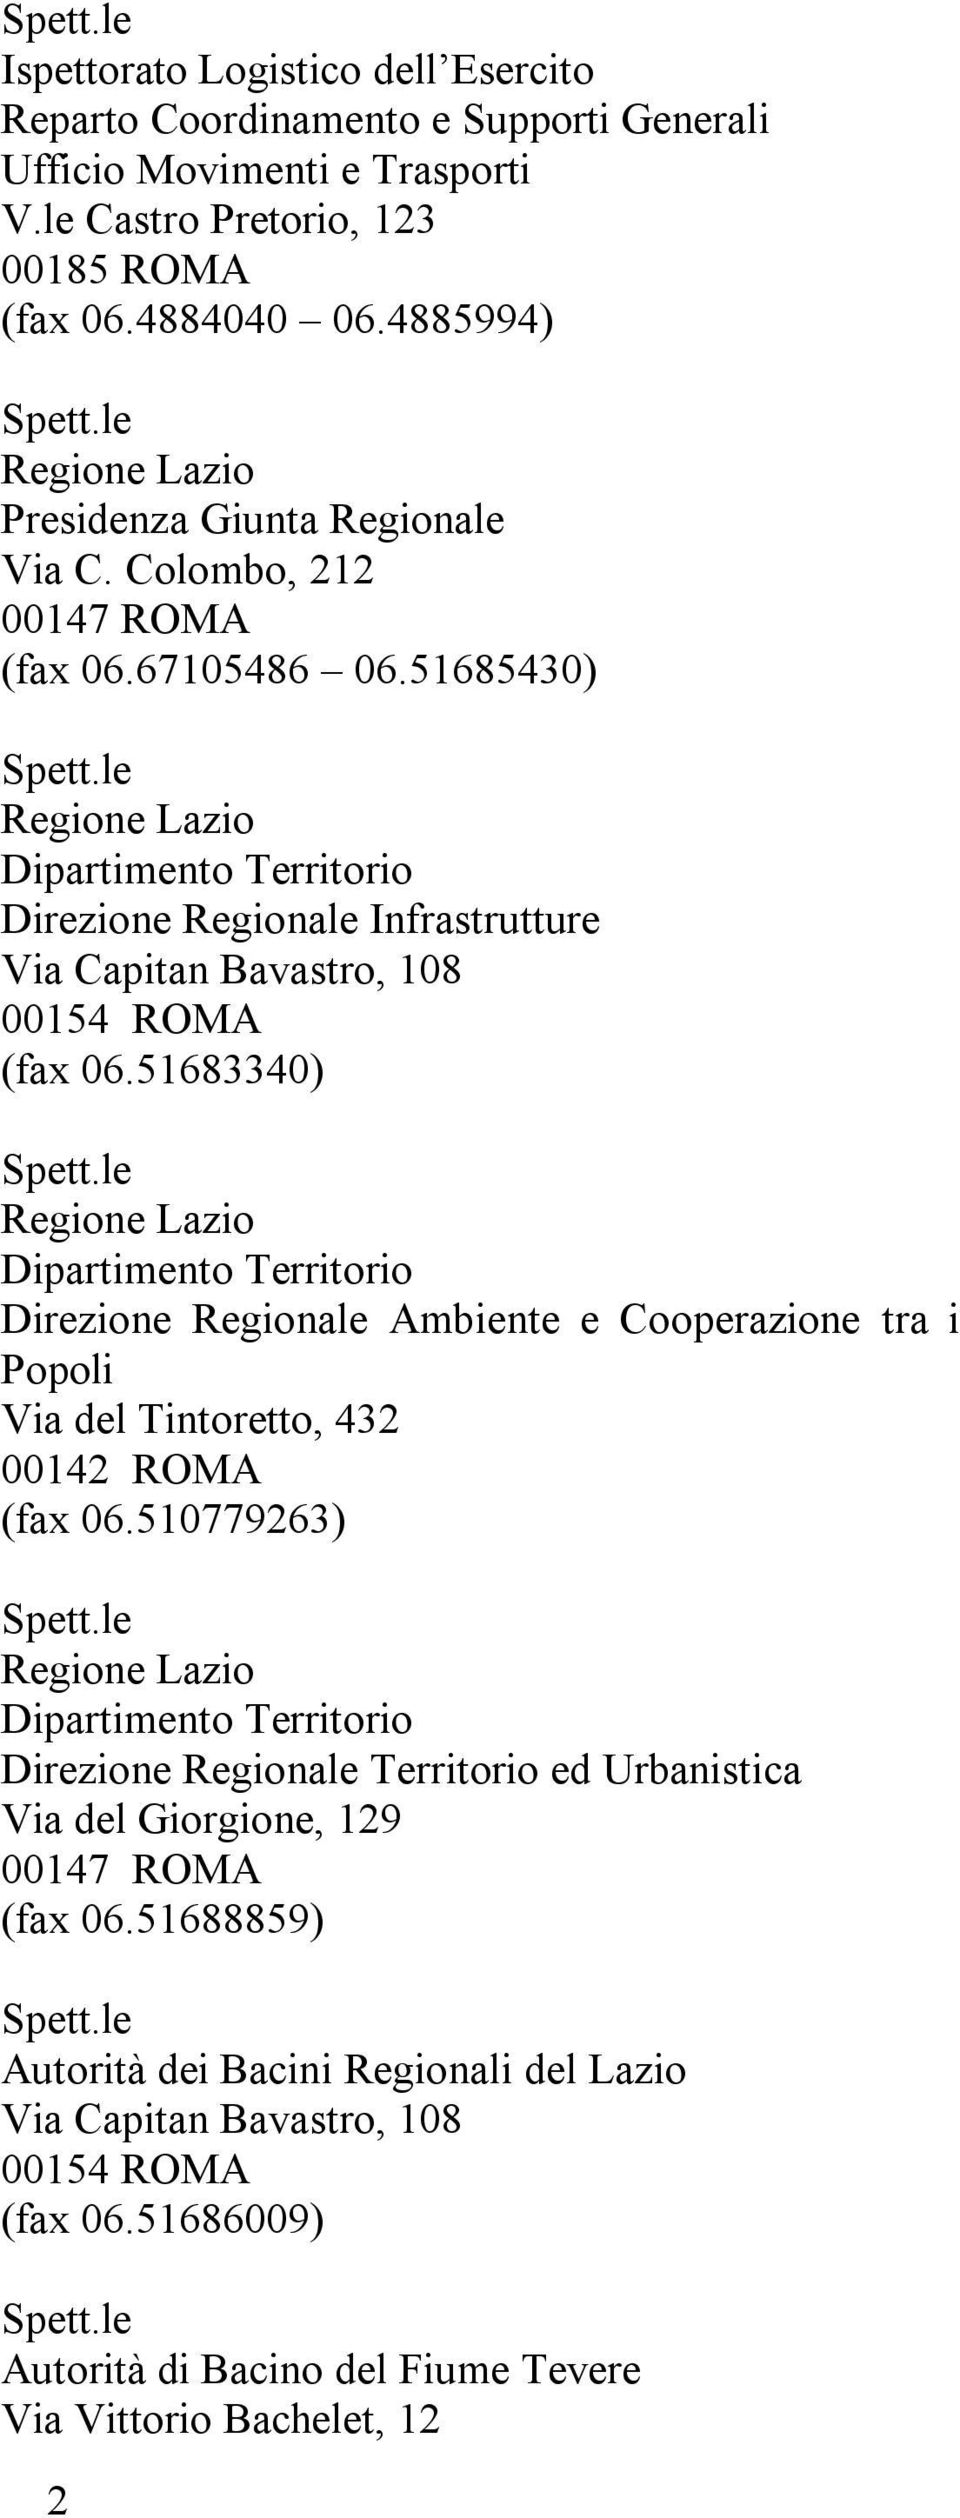 51685430) Regione Lazio Dipartimento Territorio Direzione Regionale Infrastrutture Via Capitan Bavastro, 108 00154 ROMA (fax 06.